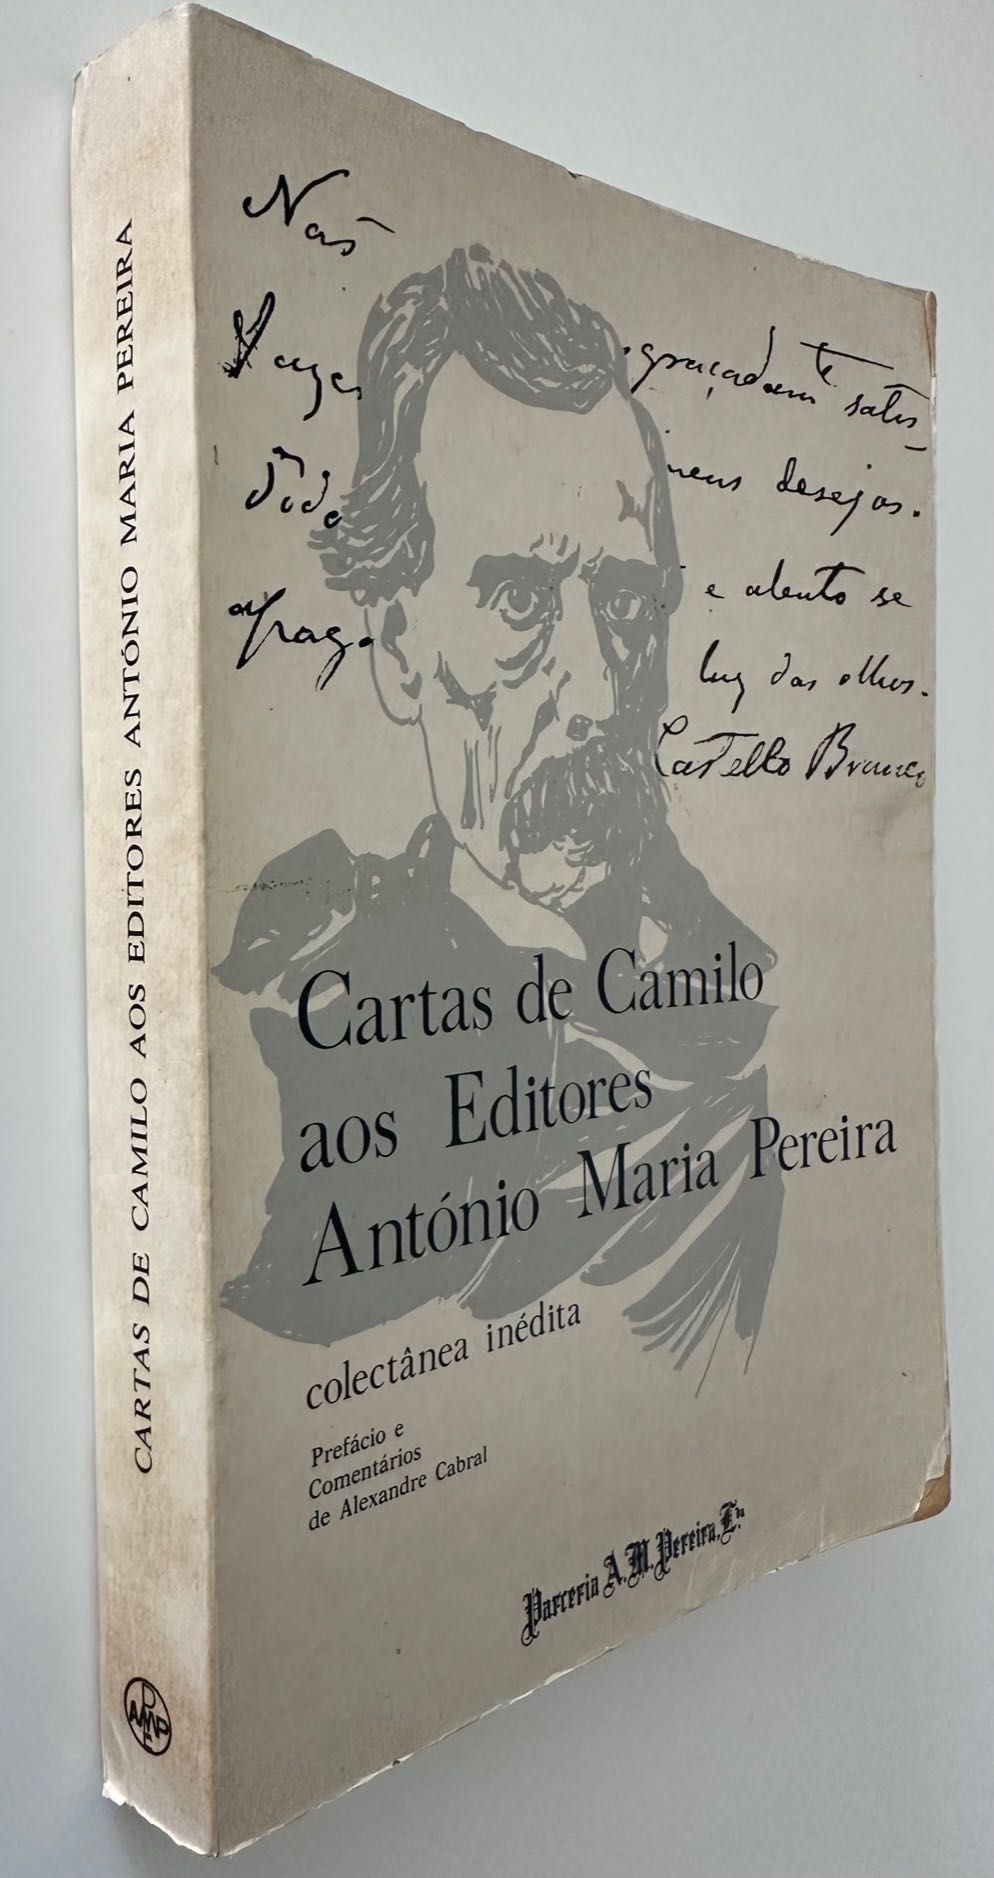 Cartas de Camilo aos Editores António Maria Pereira - 1973